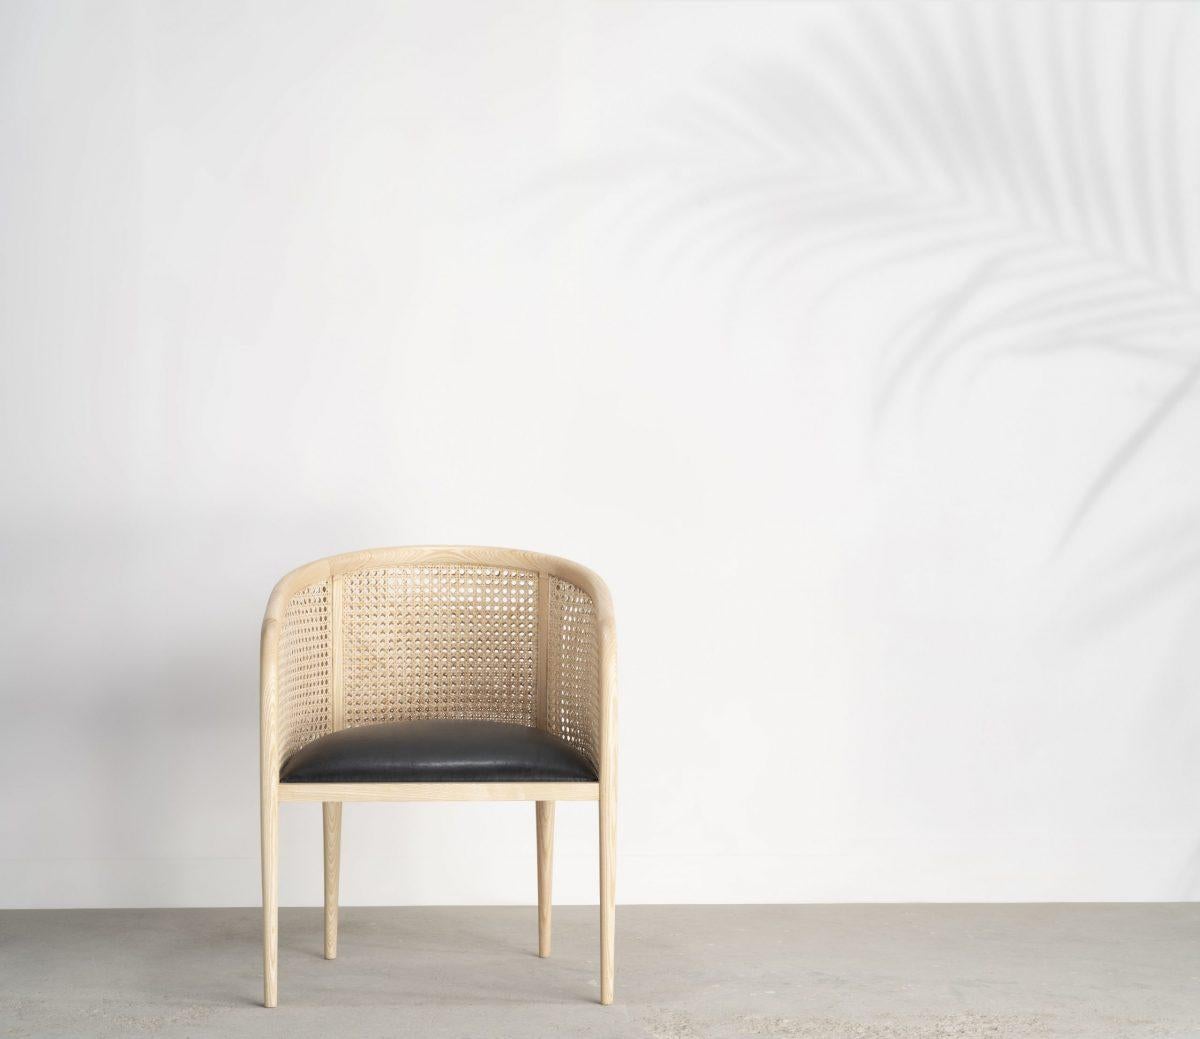 Inspirée d'un design traditionnel de chaise cannée, cette chaise est une version contemporaine d'un classique très apprécié que nous avons vu sous de nombreuses formes. Le cadre en forme de rayon est un frêne massif, dont les bords lisses sont